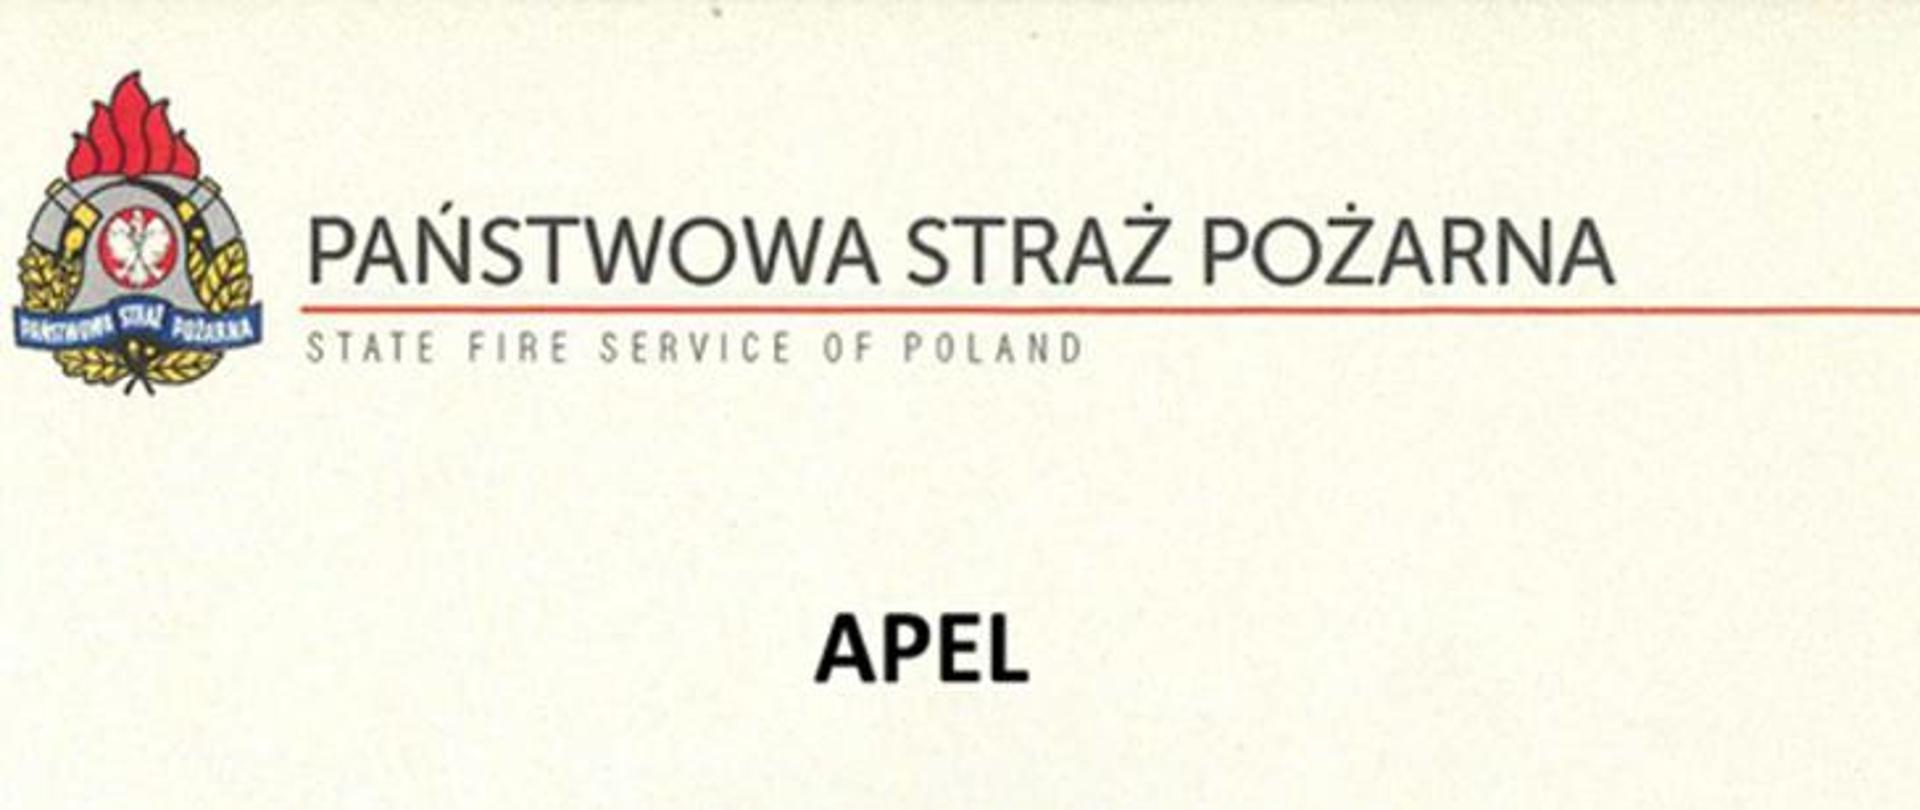 Zdjęcie przedstawia logo PSP oraz napis APEL